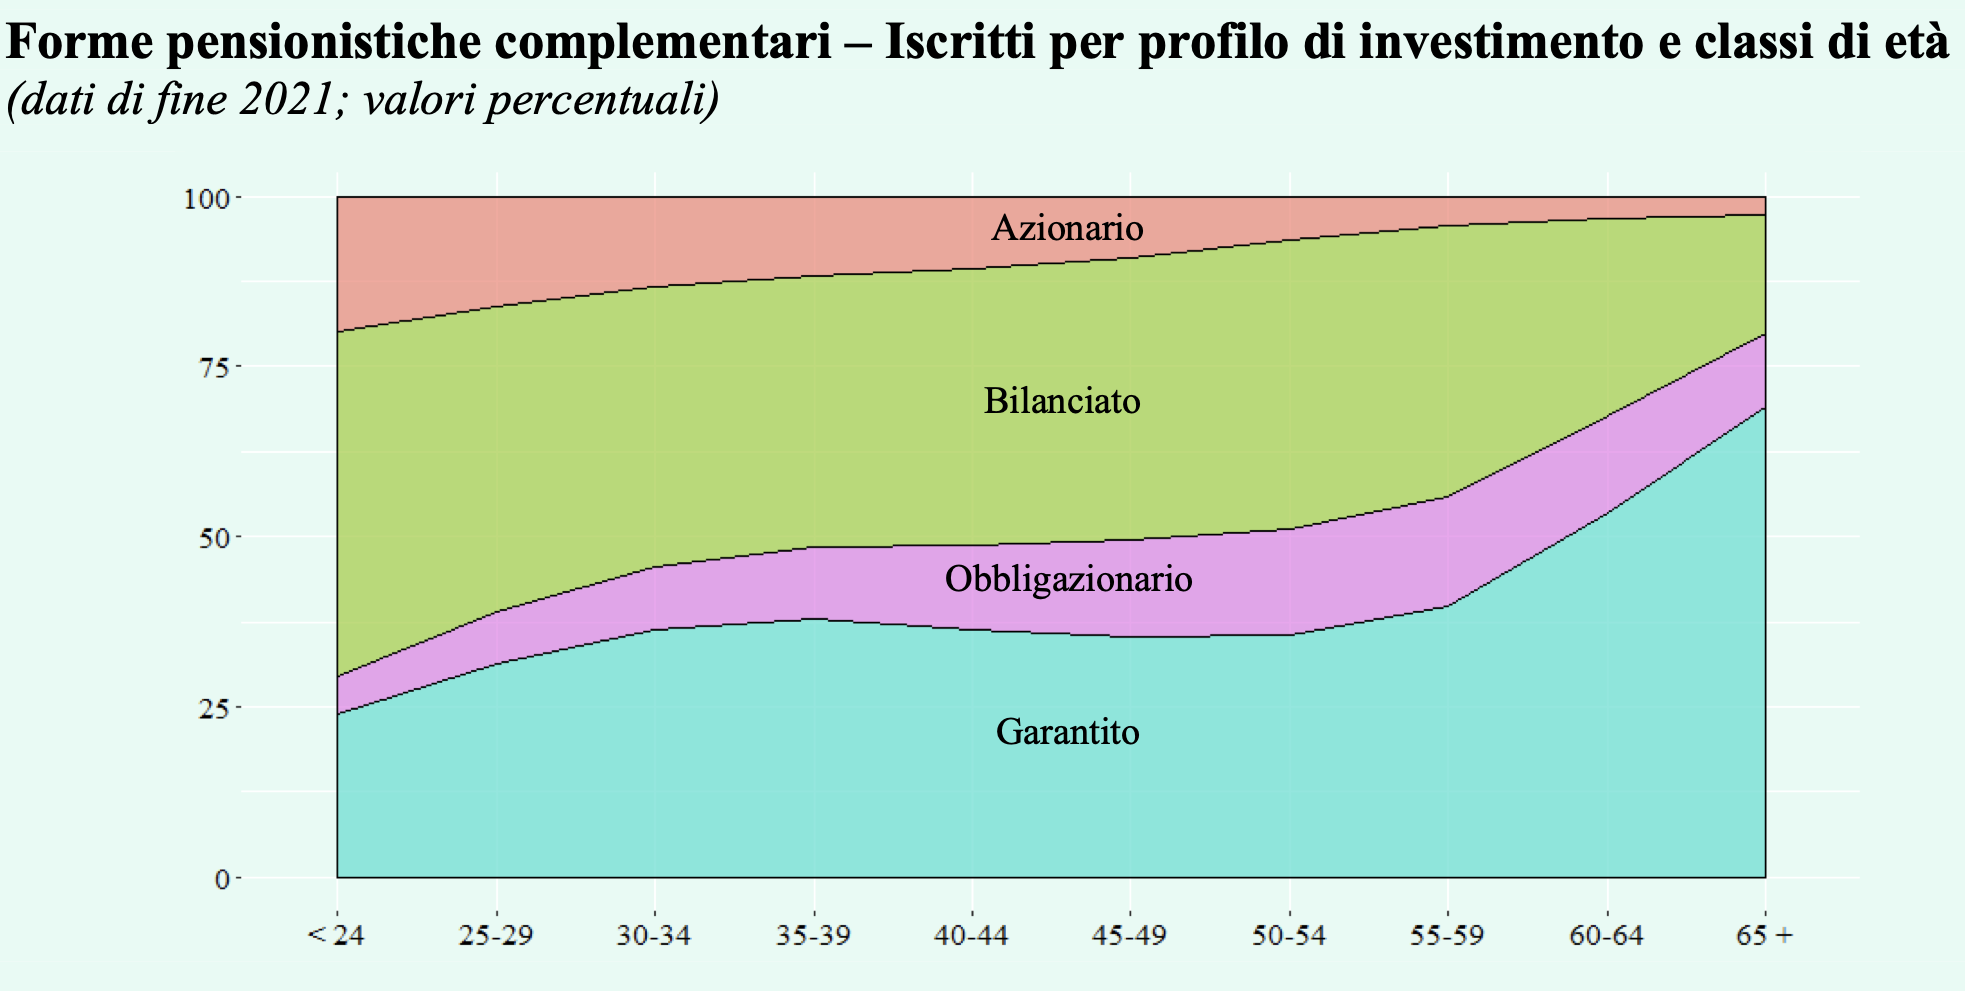 Figura 2 – Iscritti ai fondi pensione per profilo di investimento e classi di età, valori percentuali